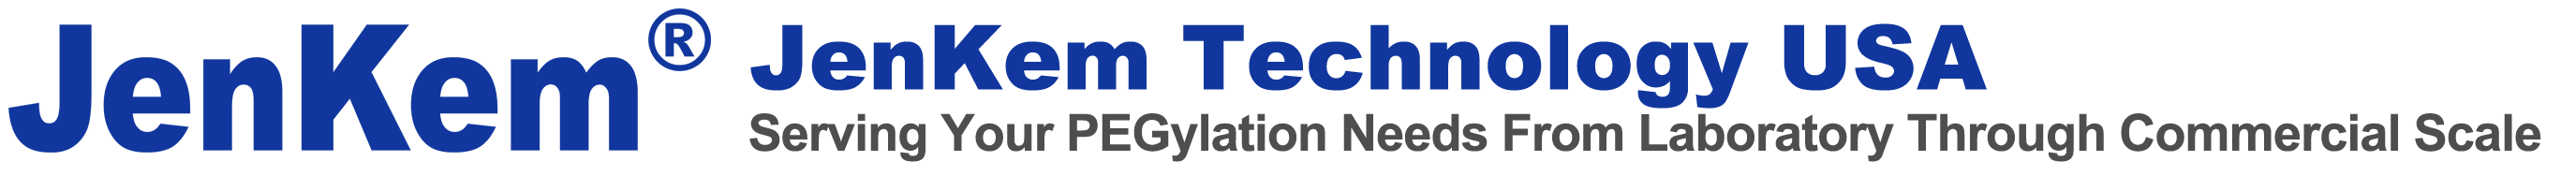 JenKem Technology - High Resolution Logo 1-23-2024